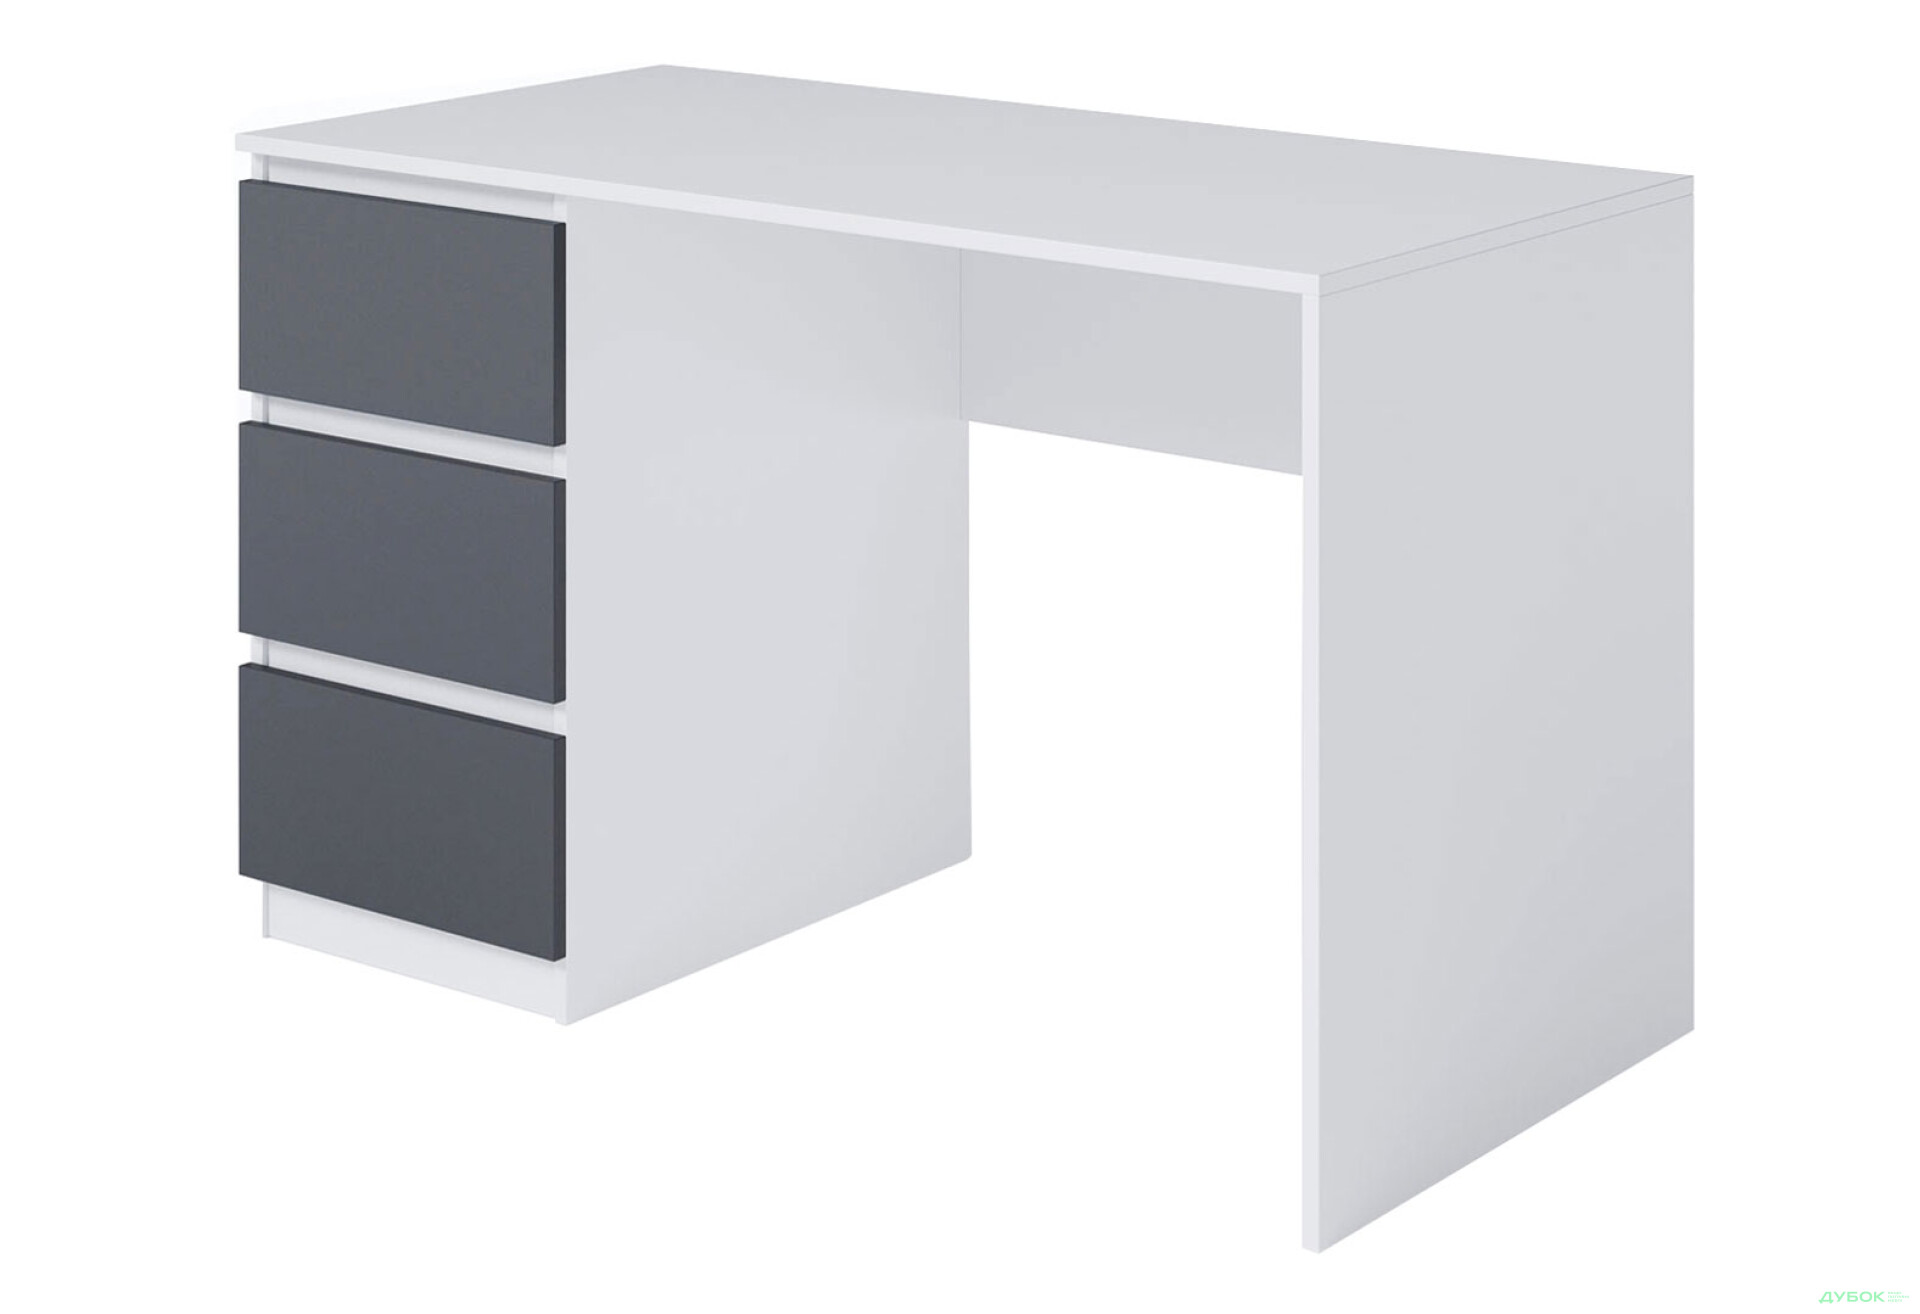 Фото 1 - Стол письменный Moreli Т224 120x60 см с ящиками слева, белый / антрацит